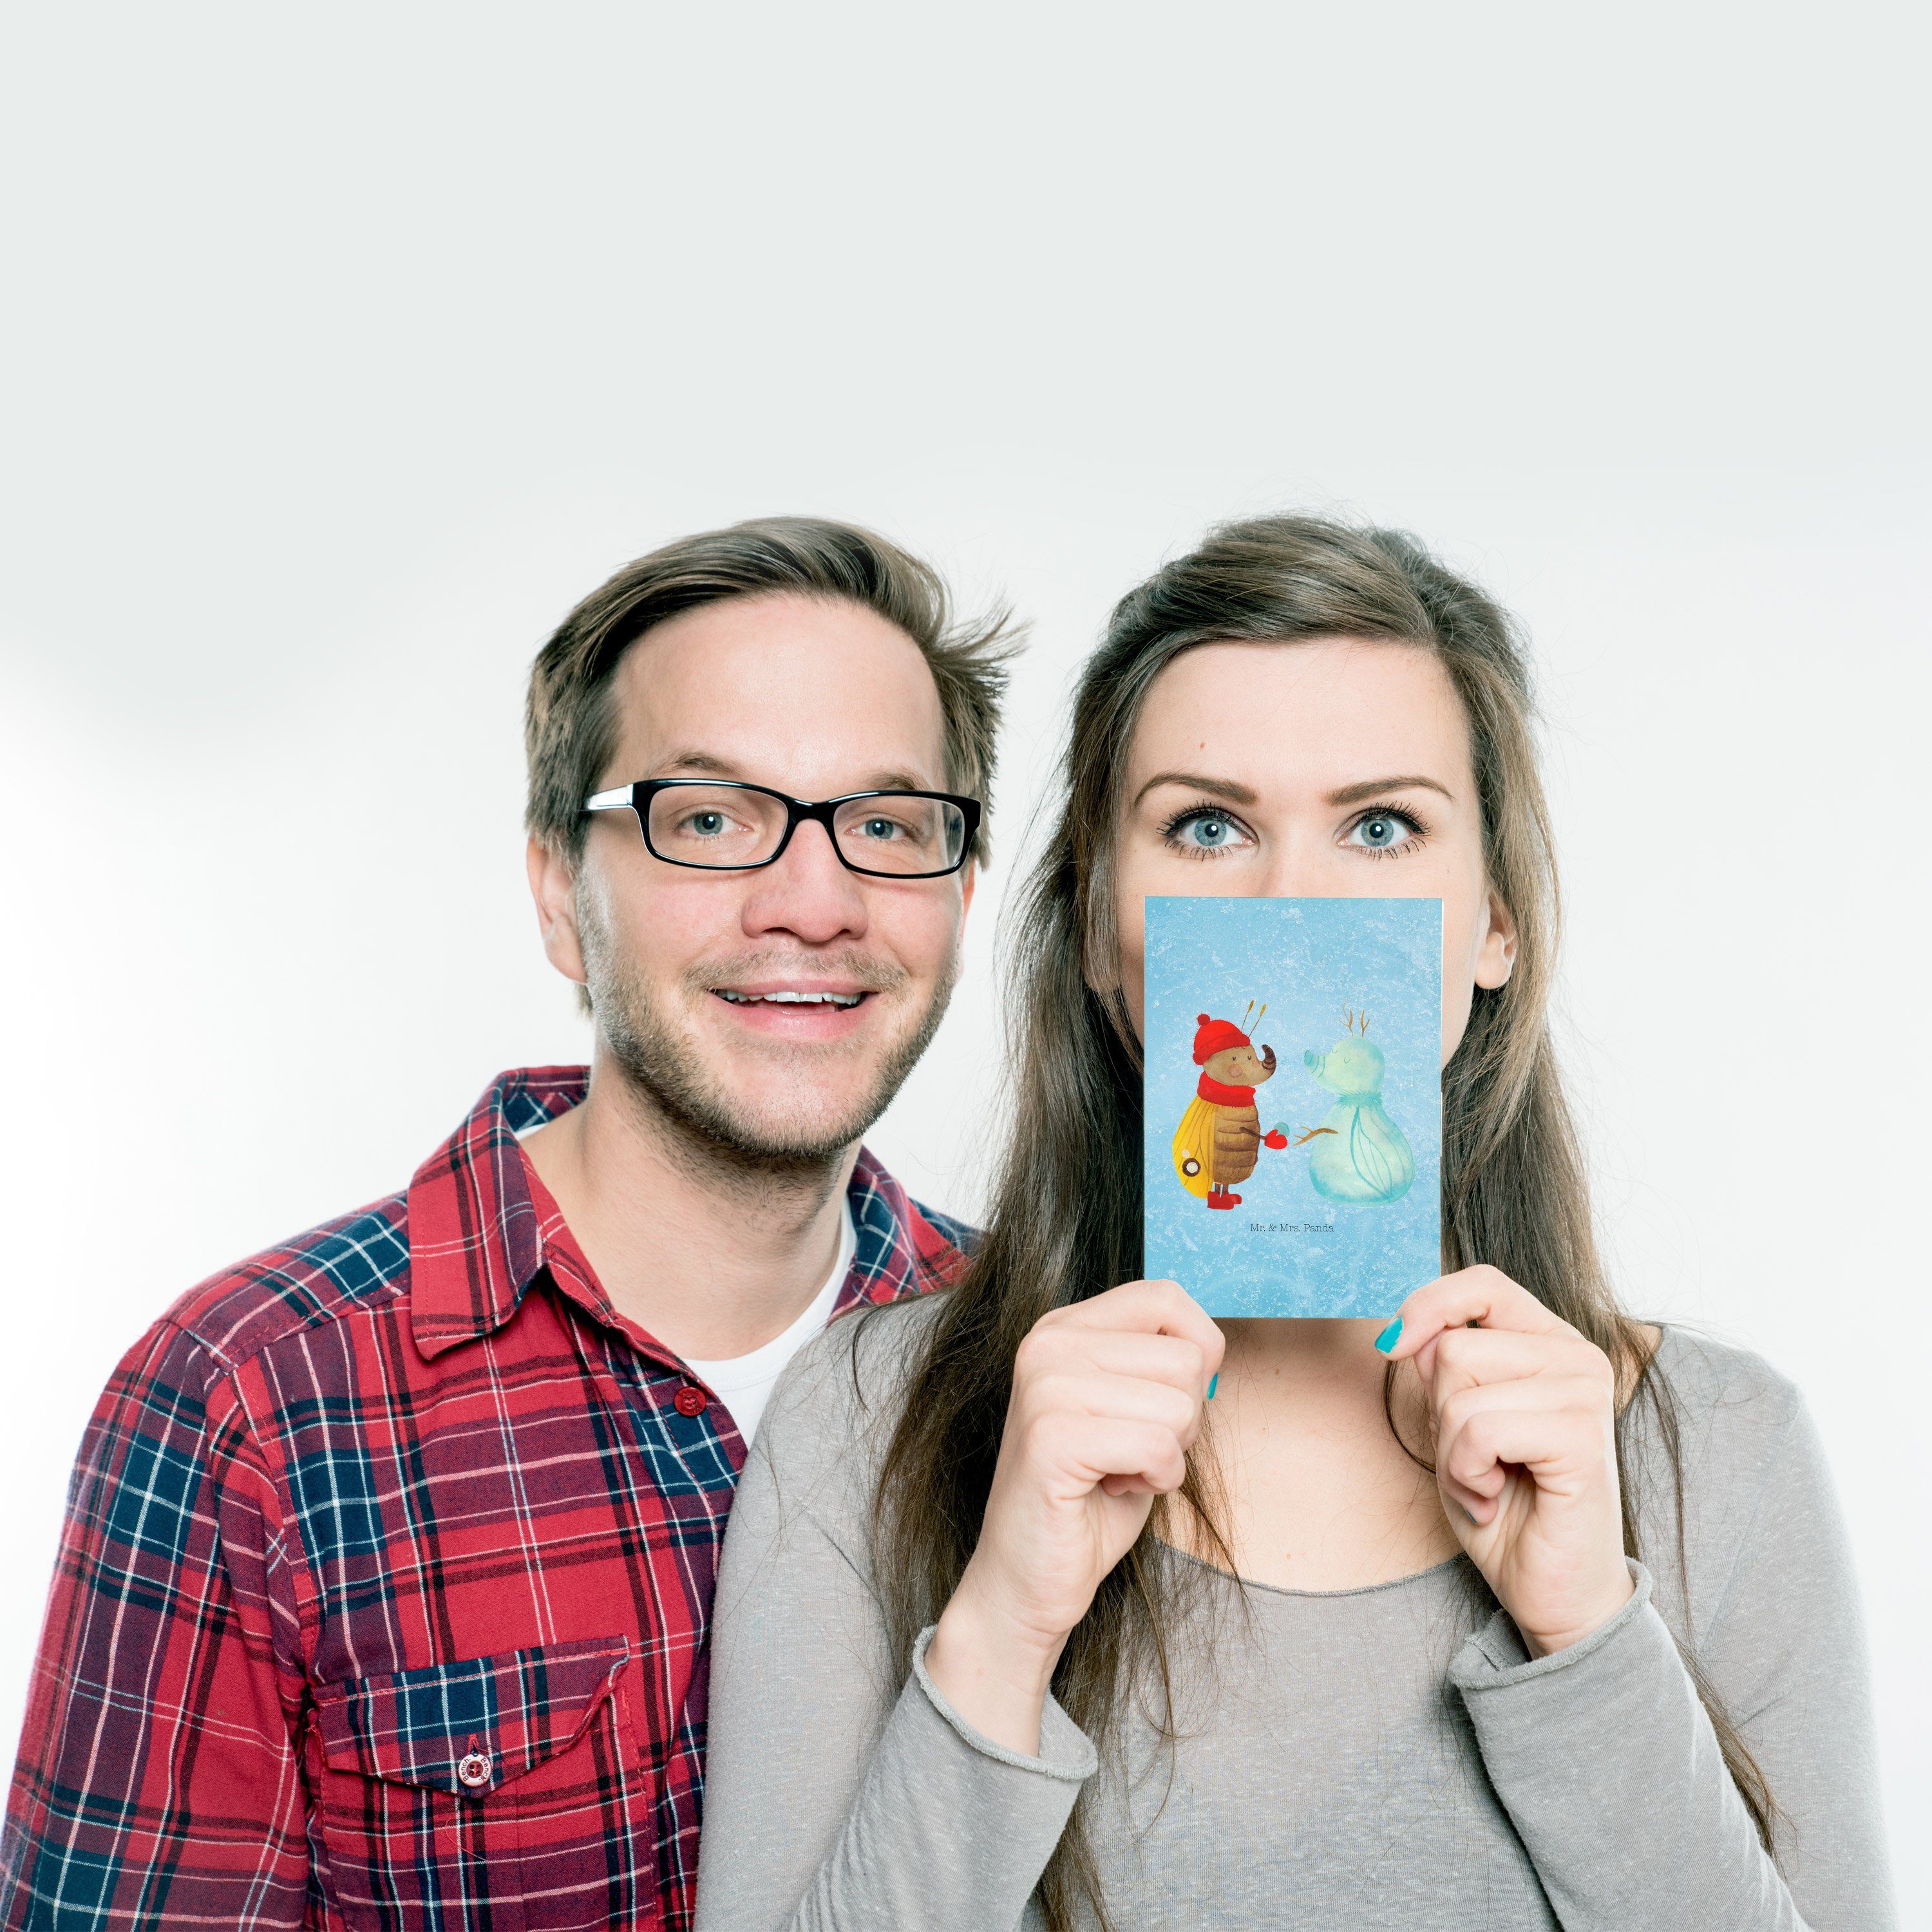 Mr. & Mrs. Panda Schneemann Postkarte - - Eisblau Nachtfalter Einladungskarte, Geburt Geschenk